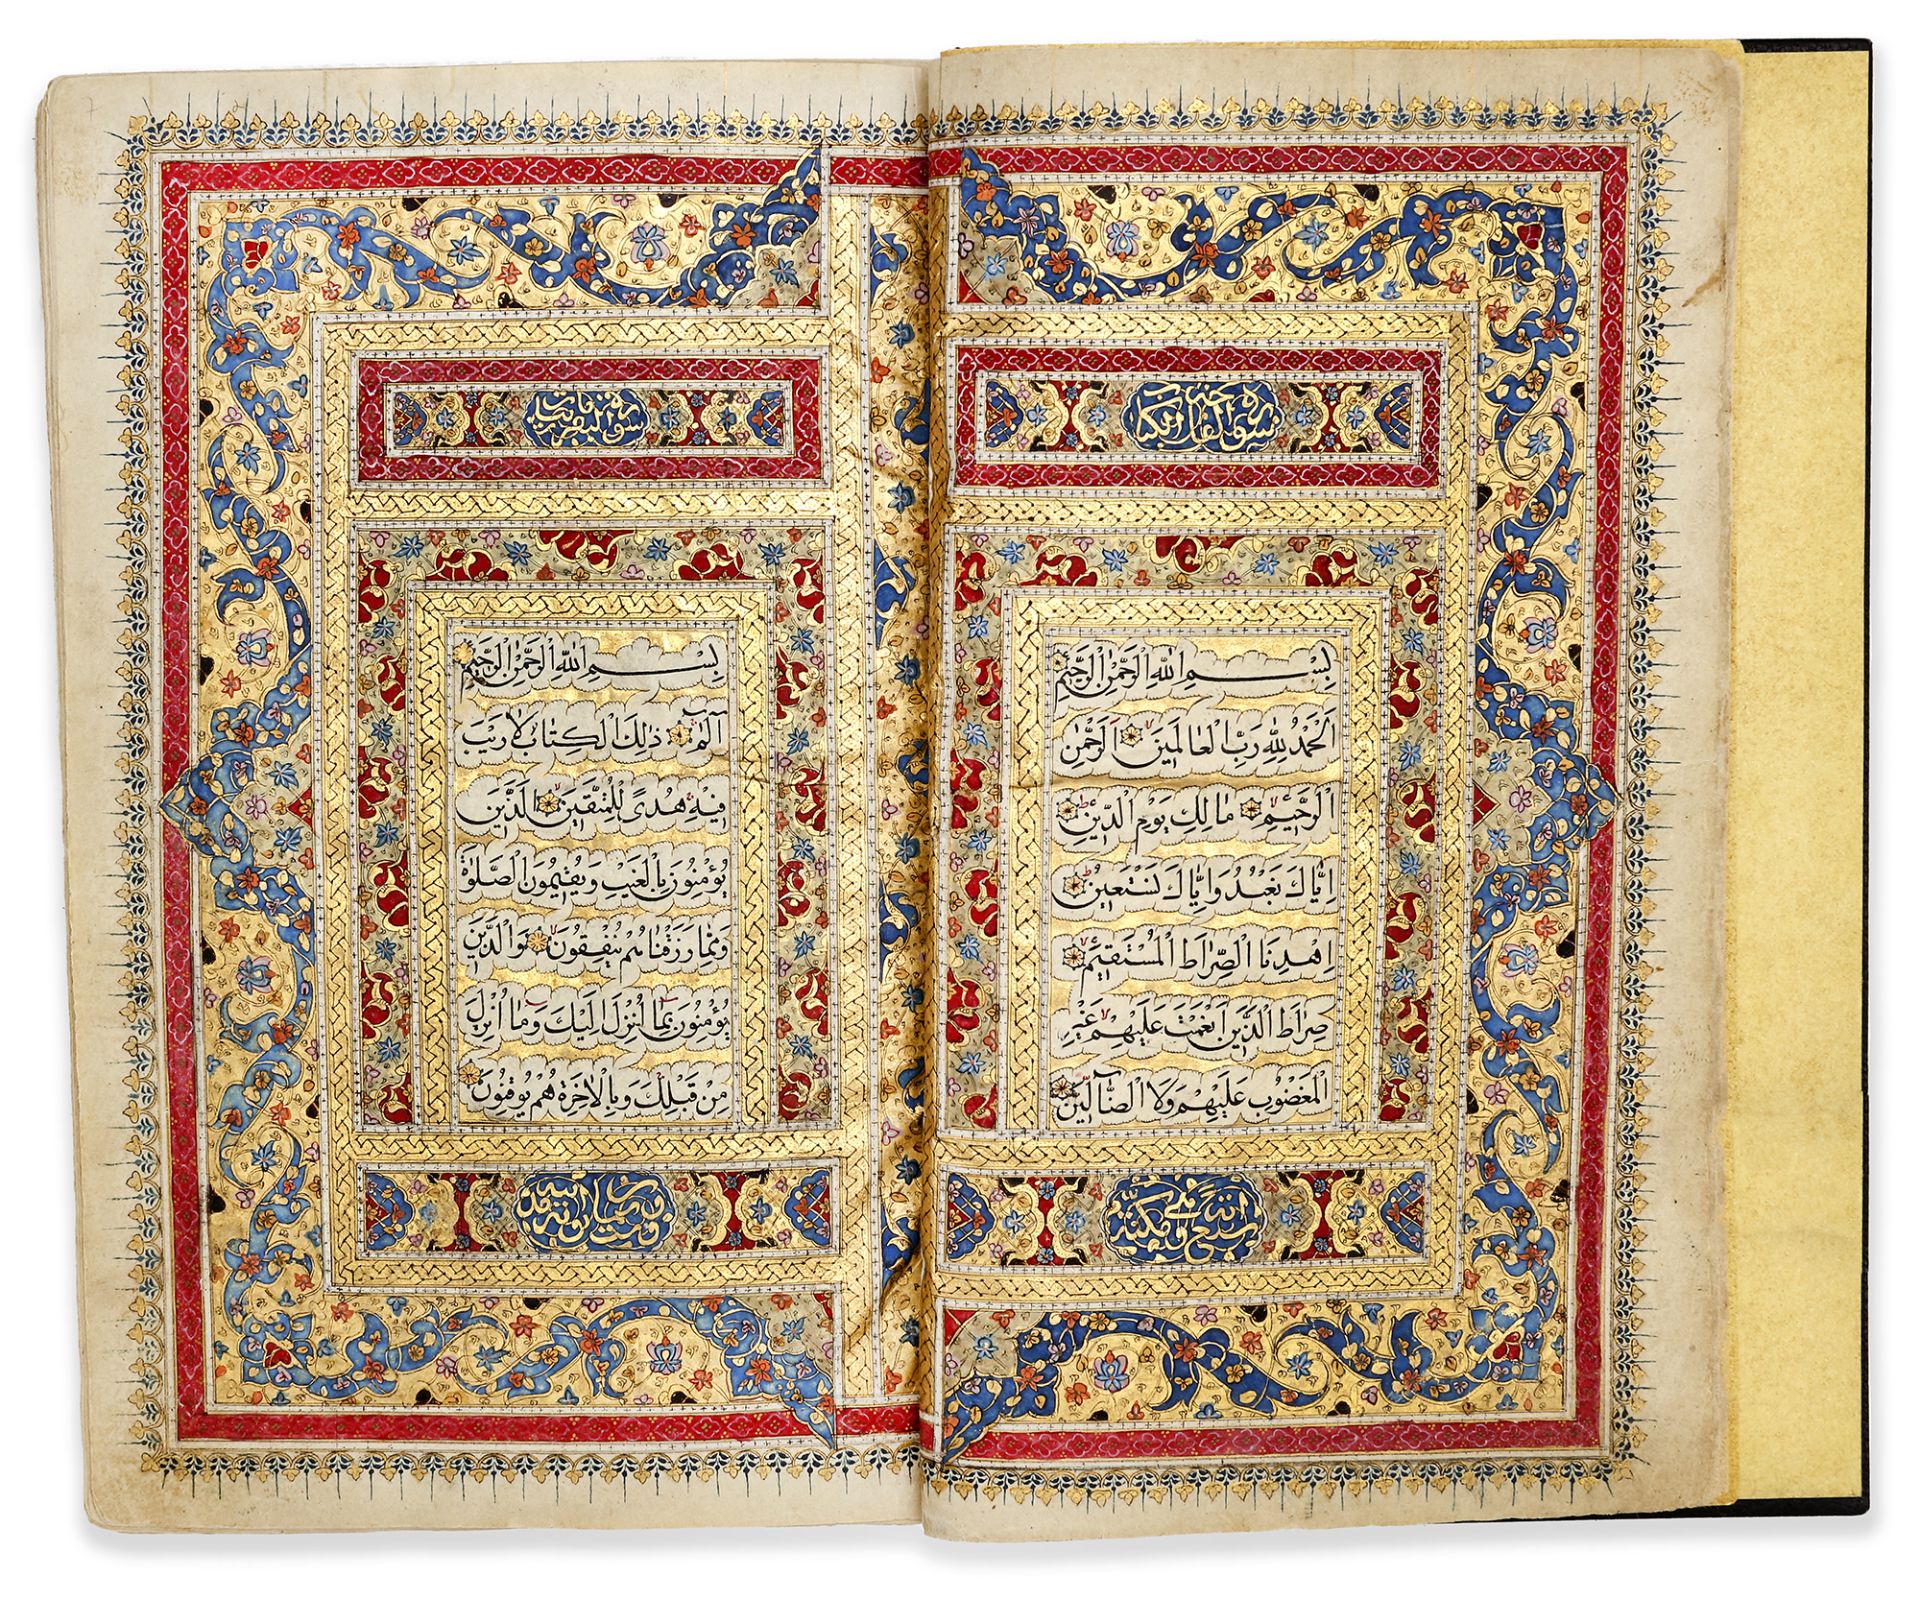 AN ILLUMINATED QAJAR QURAN BY JA'FAR AL-NARDI, DATED 1240 AH/1824 AD